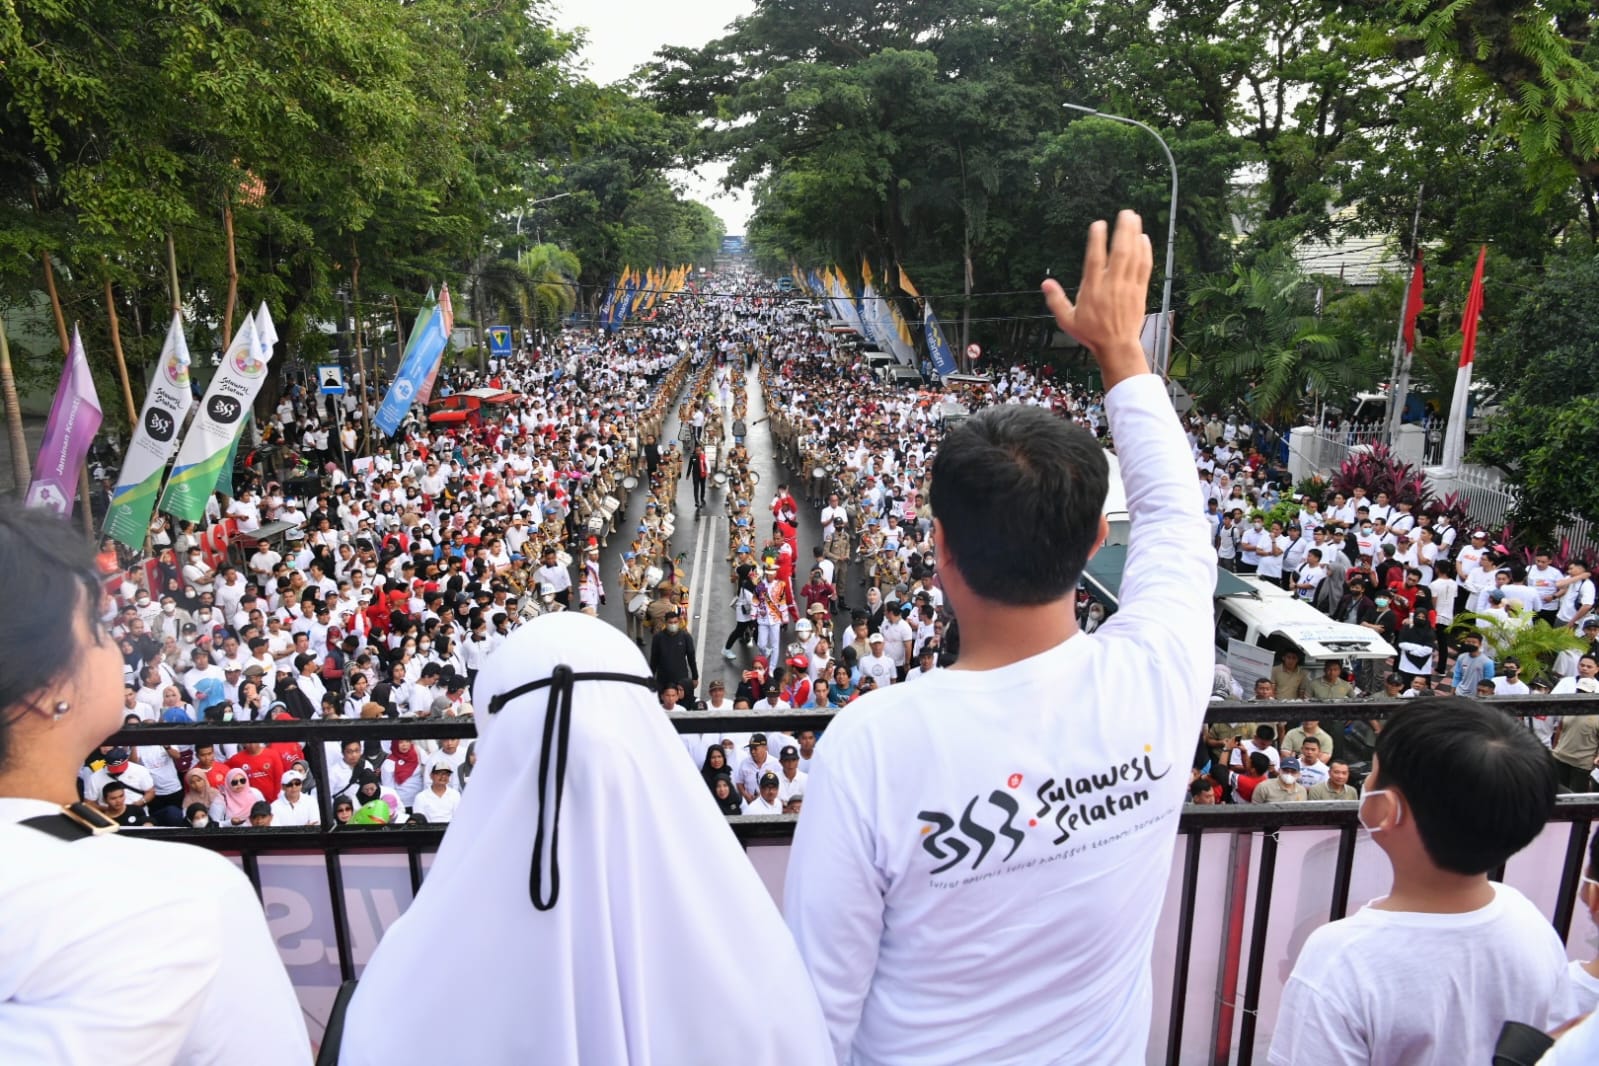 Dilepas Gubernur, Puluhan Ribu Peserta Ikuti Jalan Santai Anti Mager 353 Tahun Sulsel